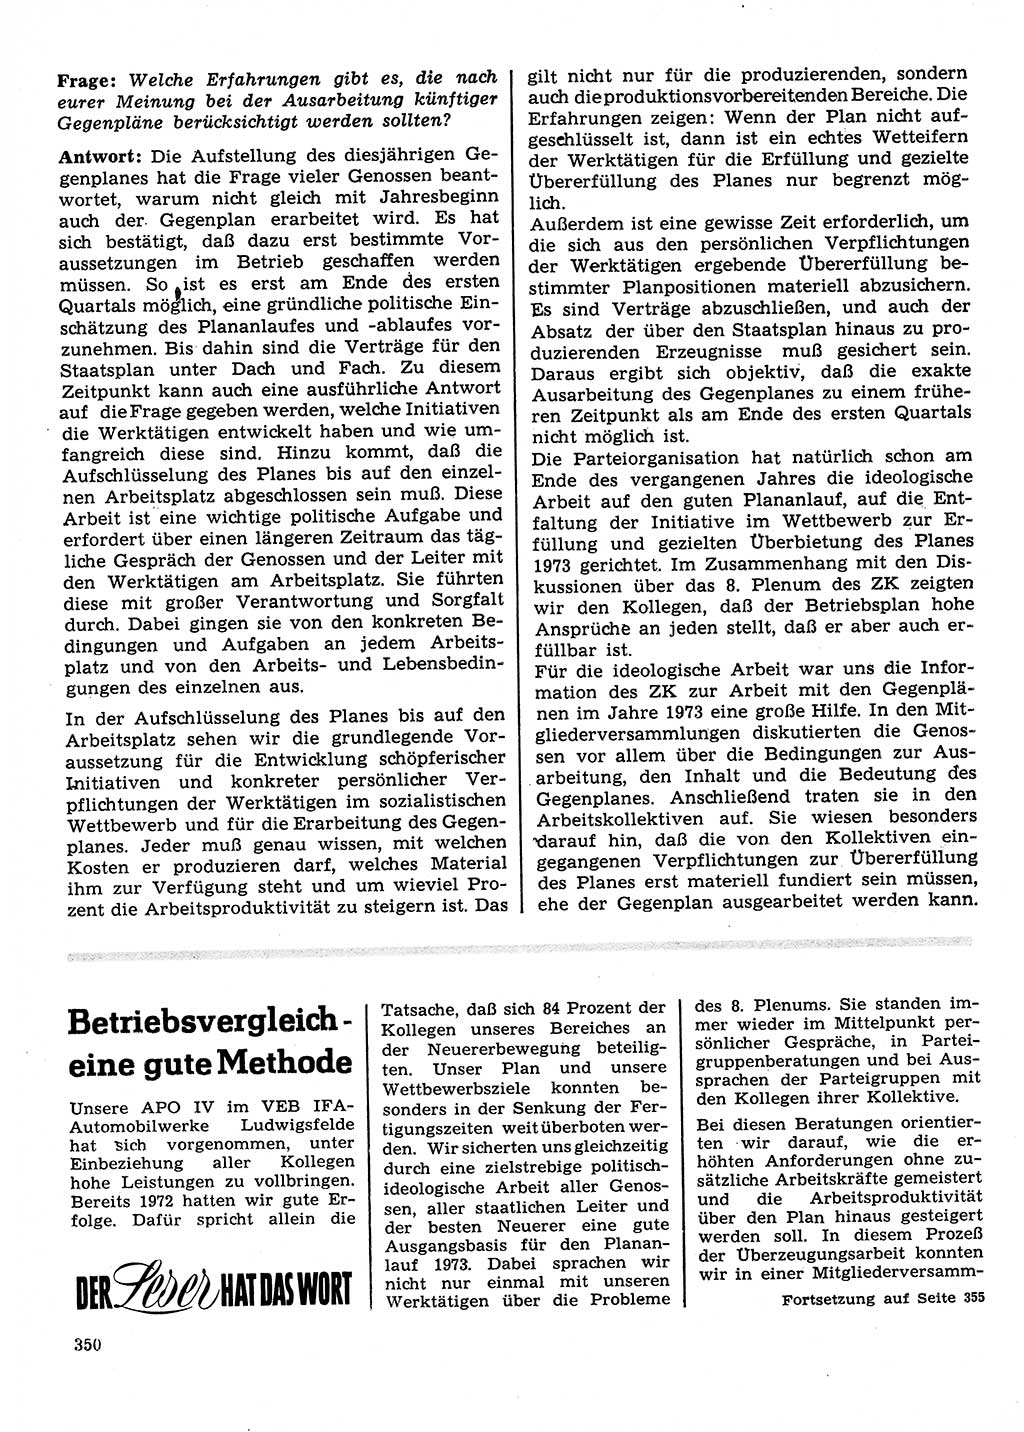 Neuer Weg (NW), Organ des Zentralkomitees (ZK) der SED (Sozialistische Einheitspartei Deutschlands) für Fragen des Parteilebens, 28. Jahrgang [Deutsche Demokratische Republik (DDR)] 1973, Seite 350 (NW ZK SED DDR 1973, S. 350)